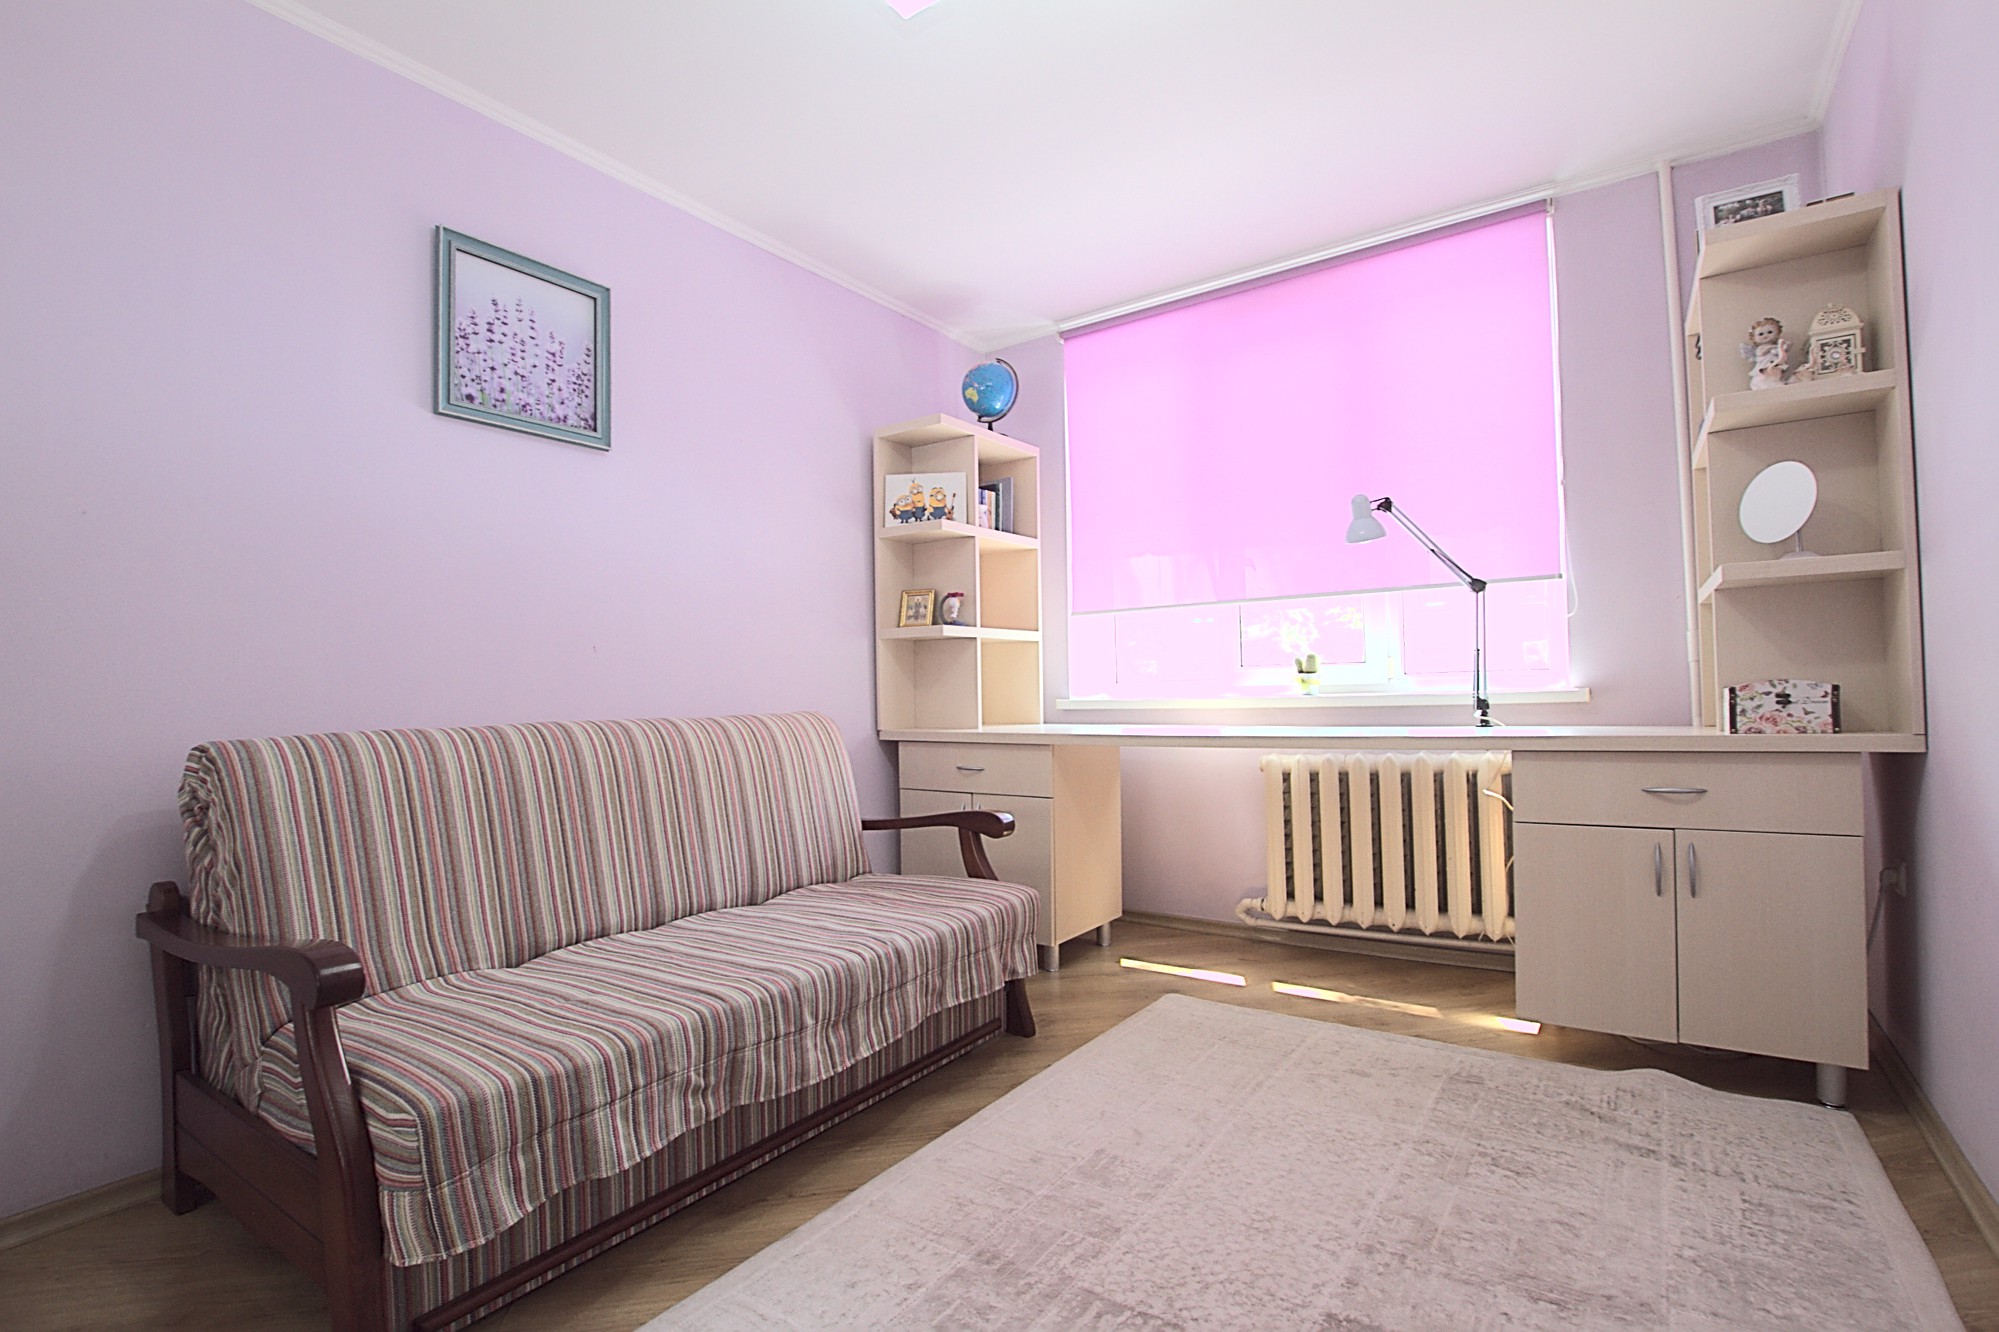 Lavender Apartment est un appartement de 2 pièces à louer à Chisinau, Moldova